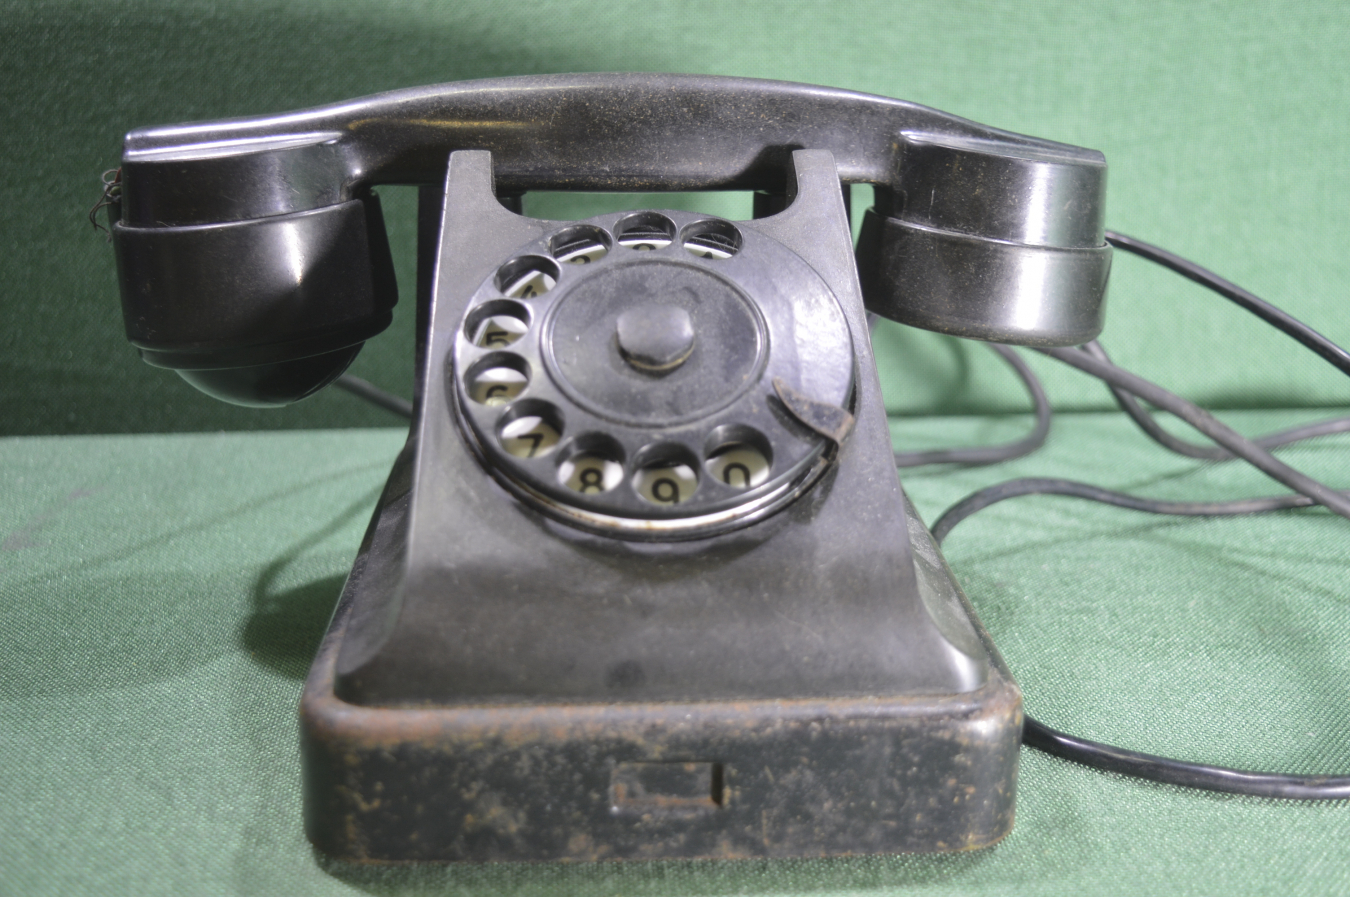 Первые телефоны в ссср